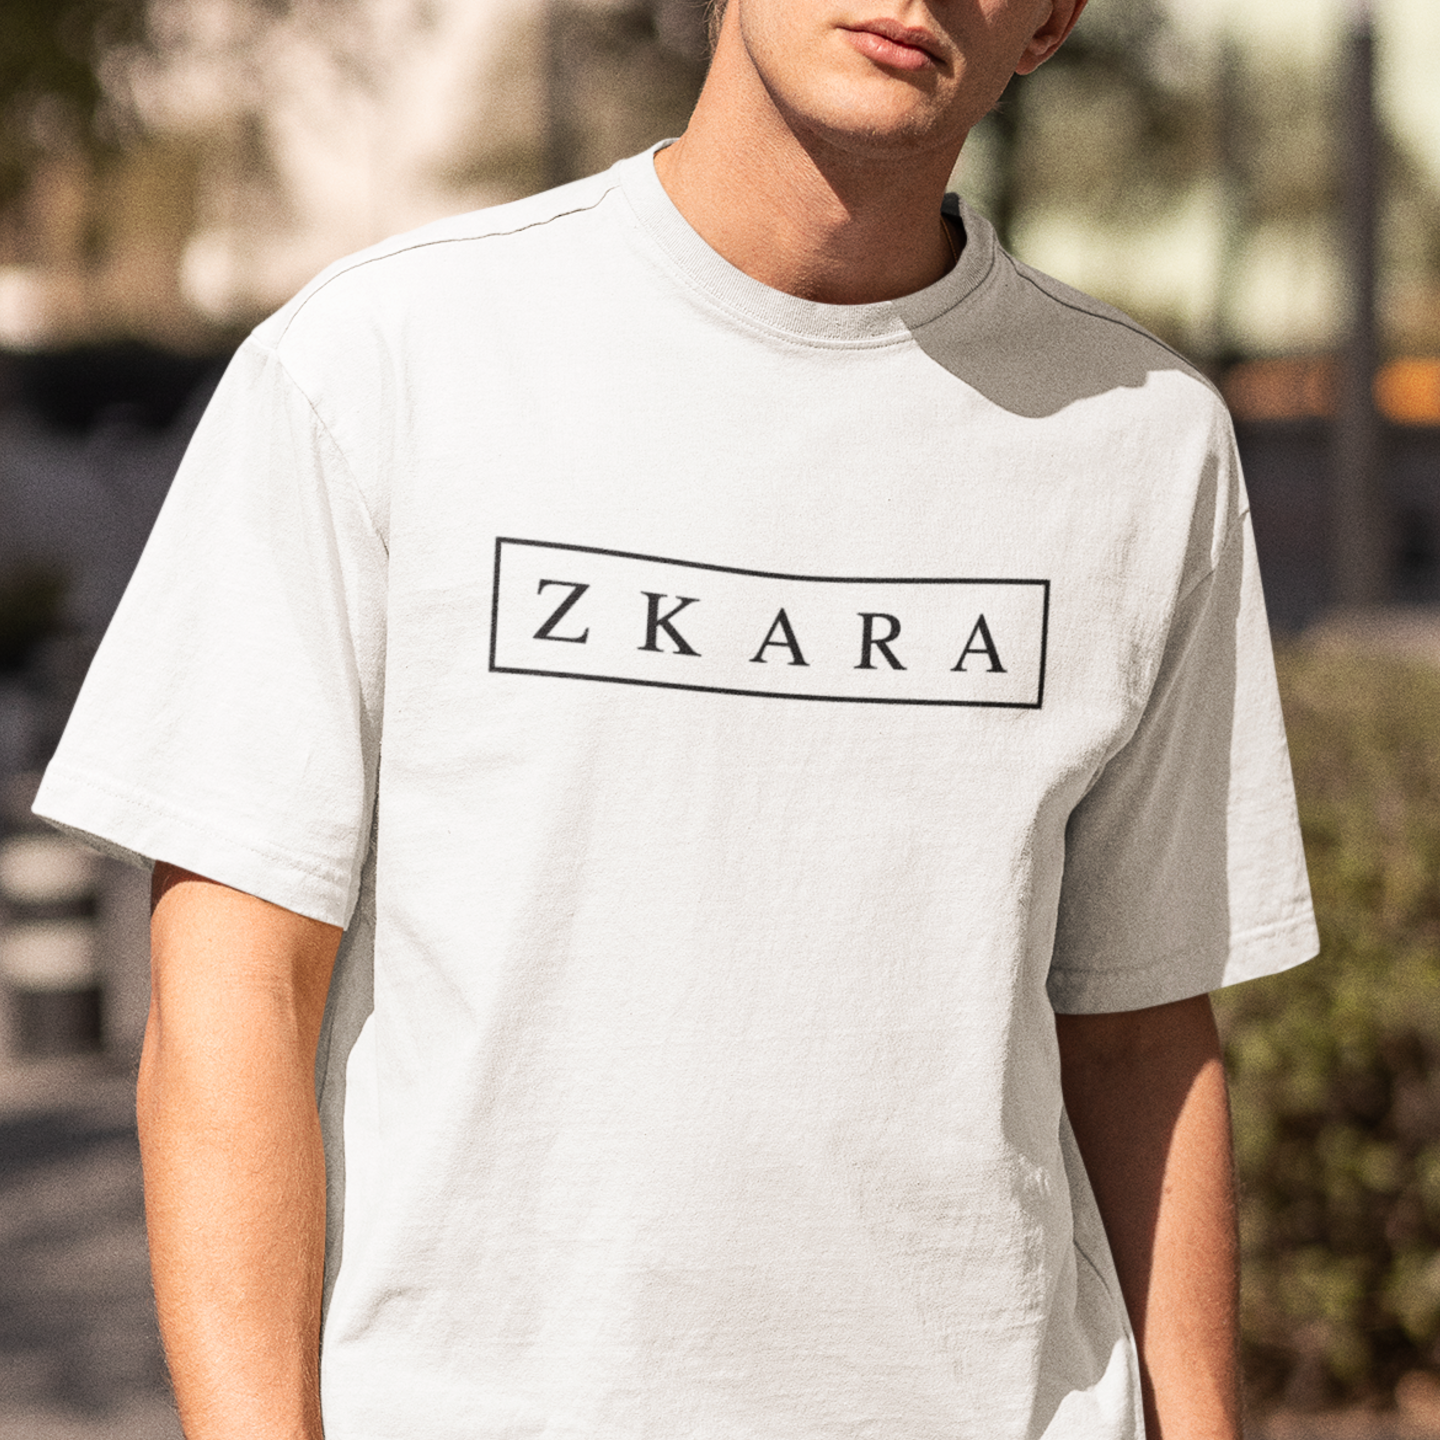 Zkara – T shirt